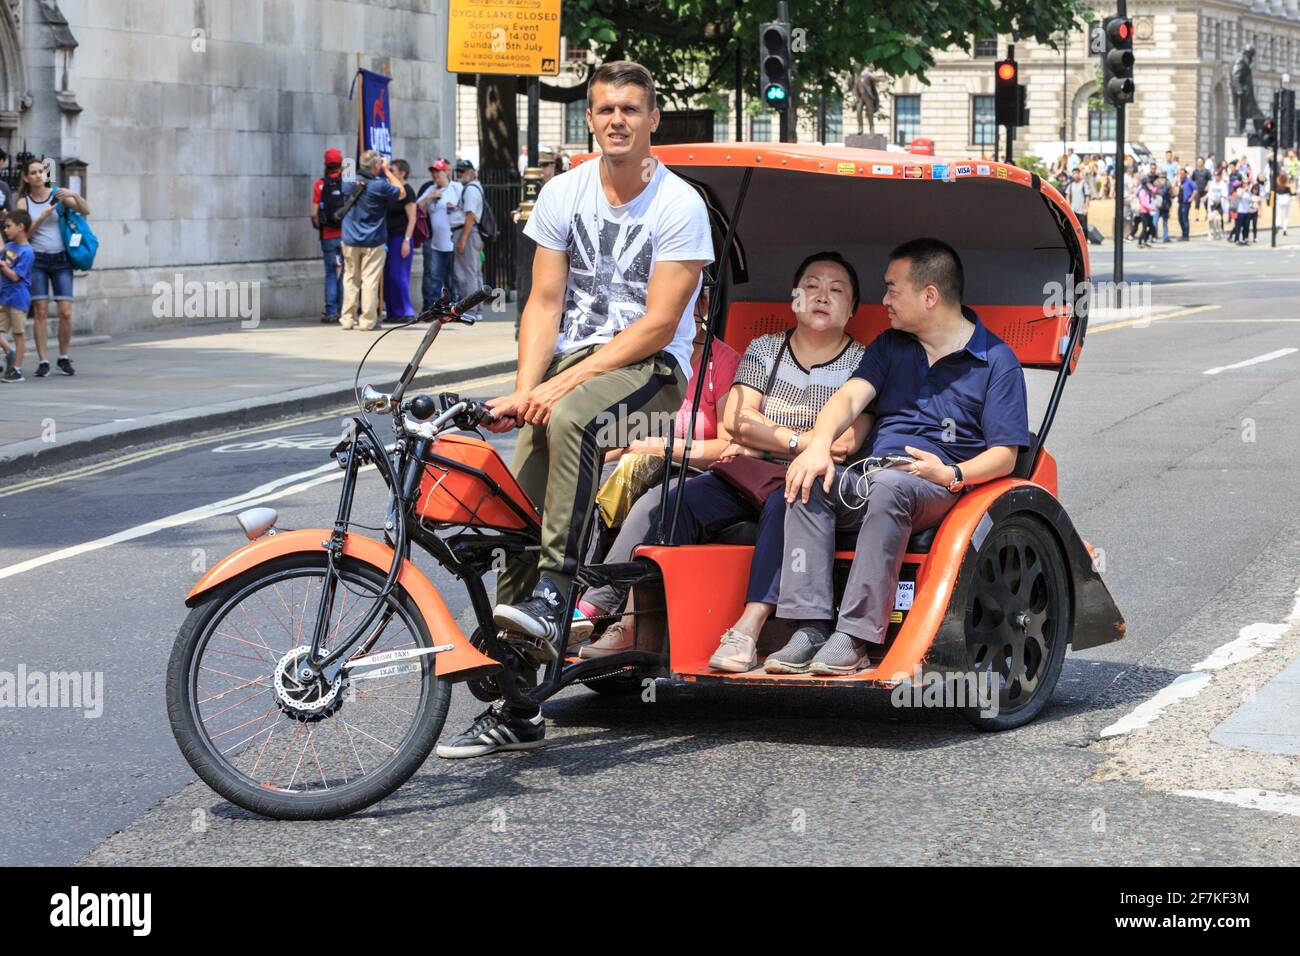 Touristes asiatiques sur un vélo-pousse (vélo-taxi ou pédicab) à Westminster, Londres, Angleterre Banque D'Images